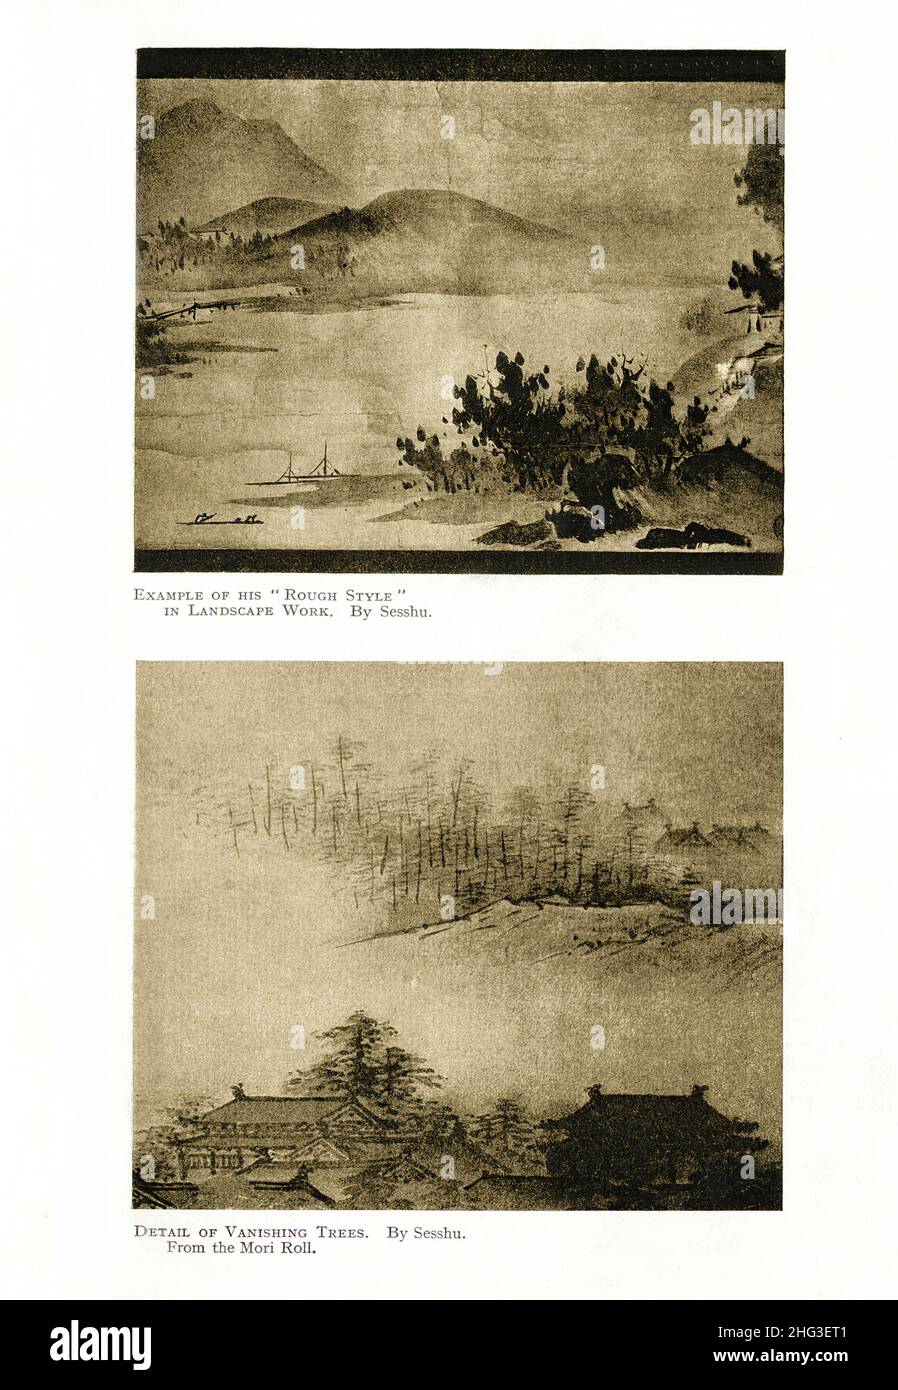 Peintures médiévales japonaises de Sesshu : exemple de son style « Rouch » en travaux de paysage (haut) et détail des arbres en voie de disparition.(De Mori Roll).Reproduct Banque D'Images